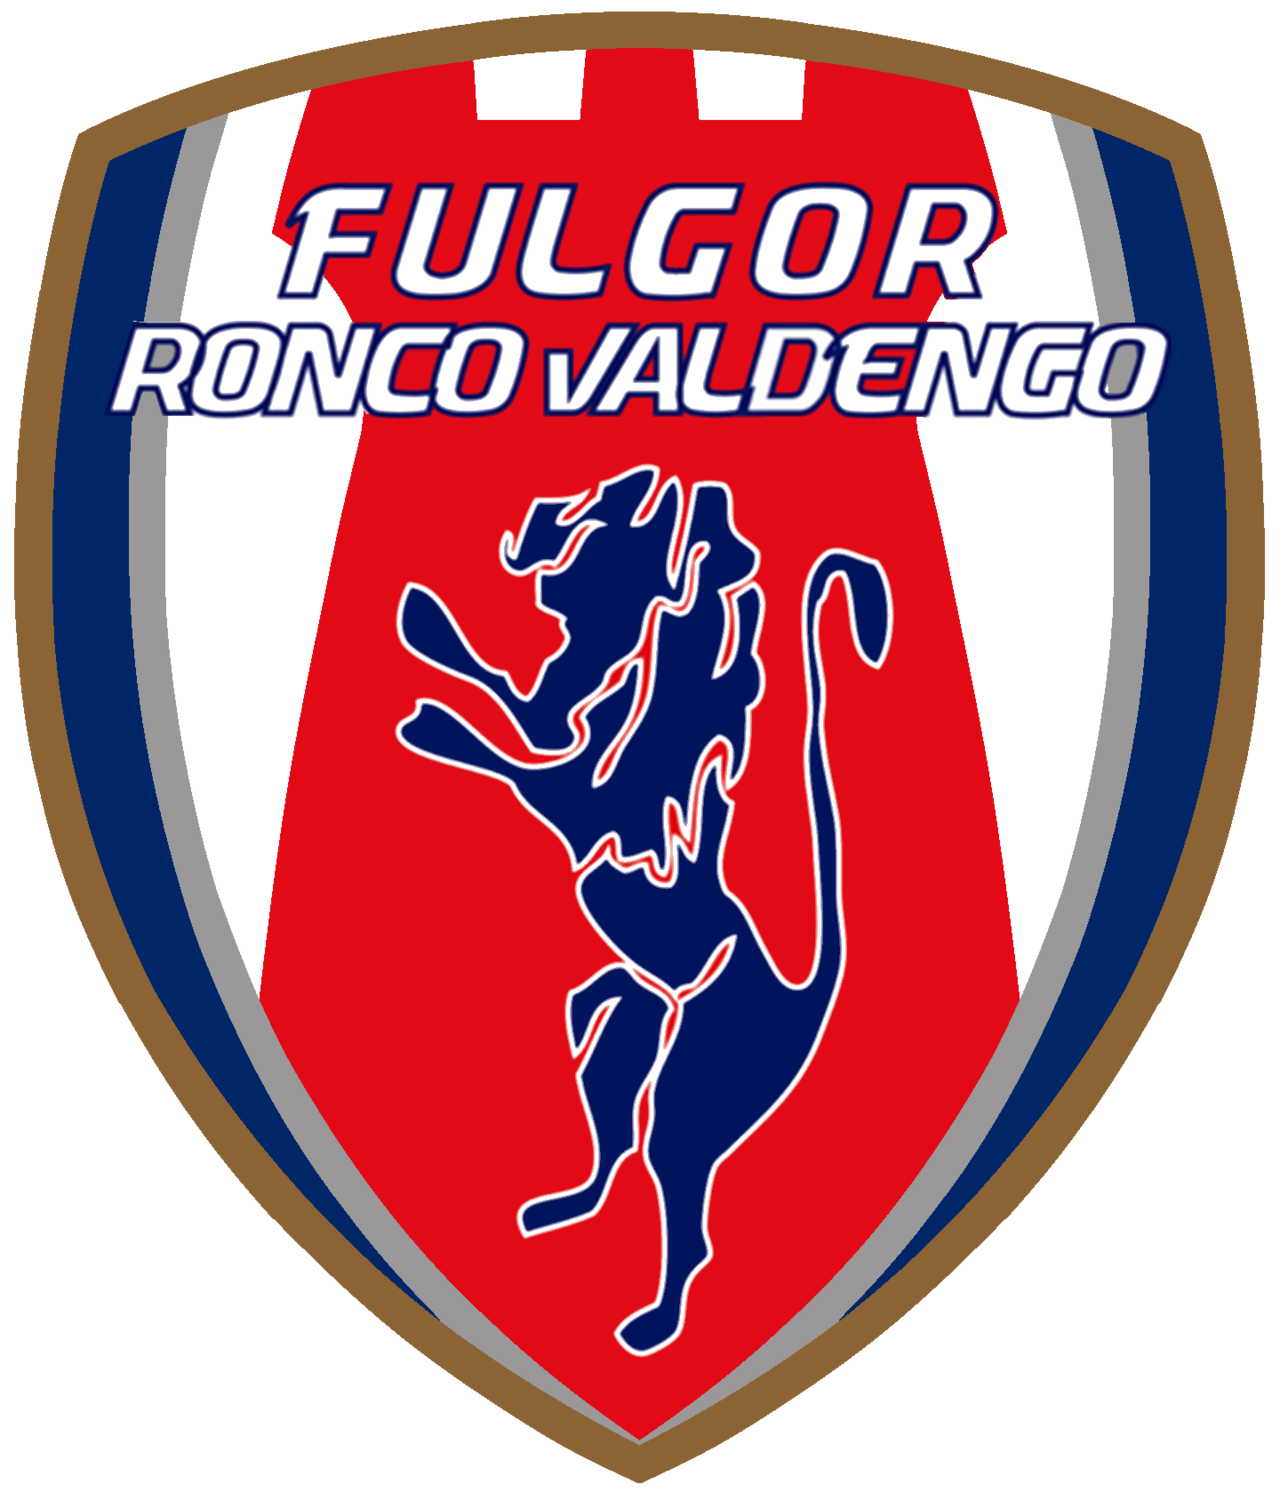 Wappen ASD Fulgor Ronco Valdengo